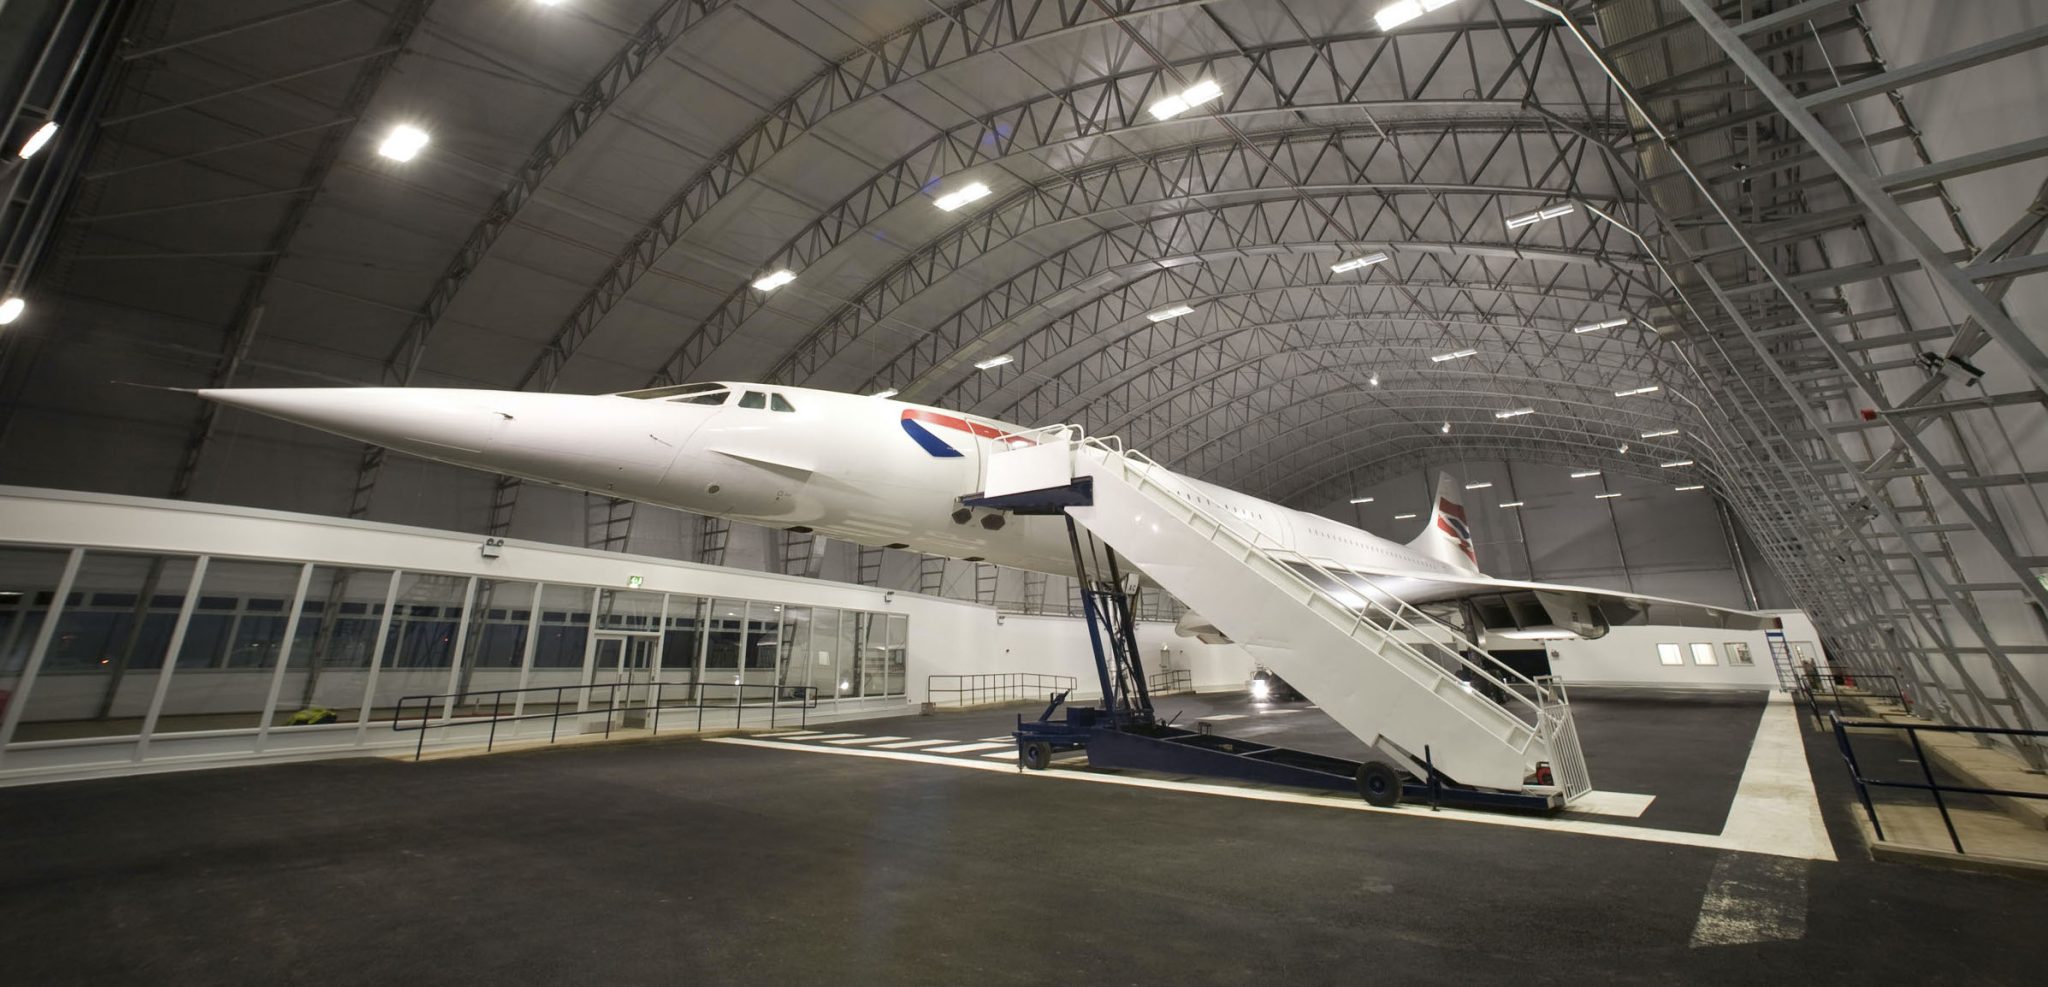 Une rave de 8 heures va s’installer sous les ailes du Concorde de Manchester